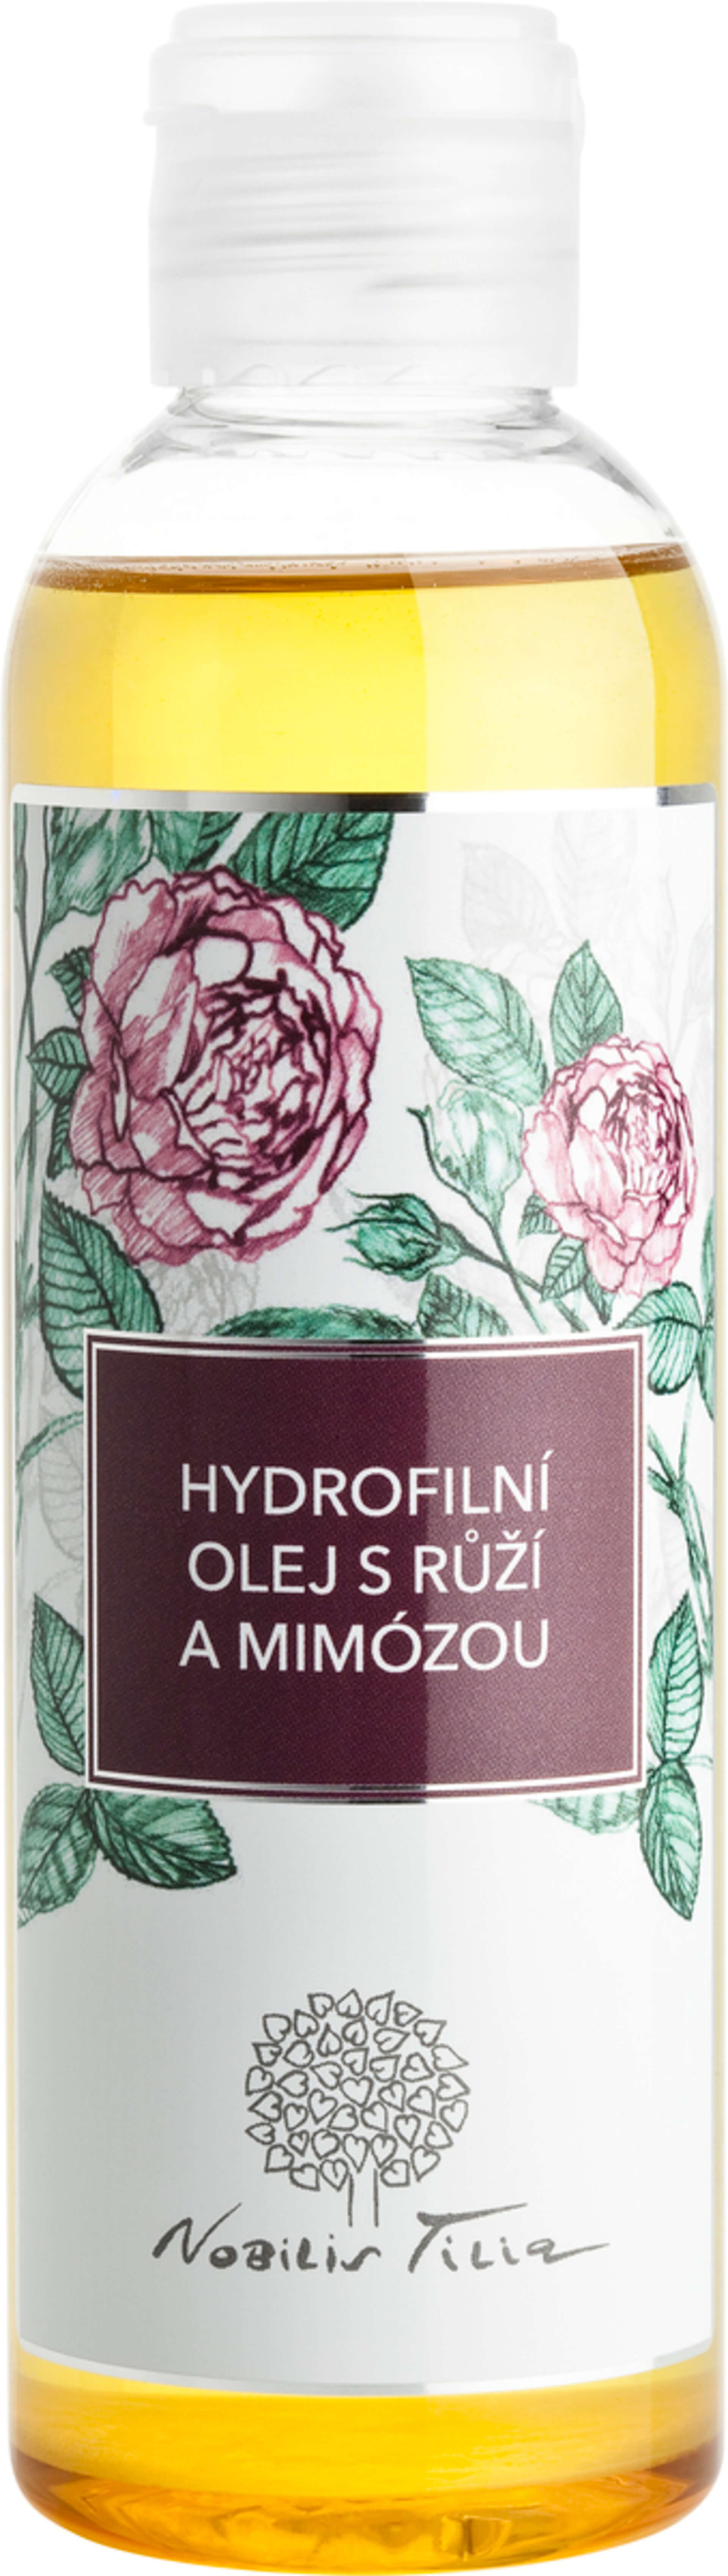 Nobilis Tilia Hydrofilný olej s Ružou a mimózou 200 ml